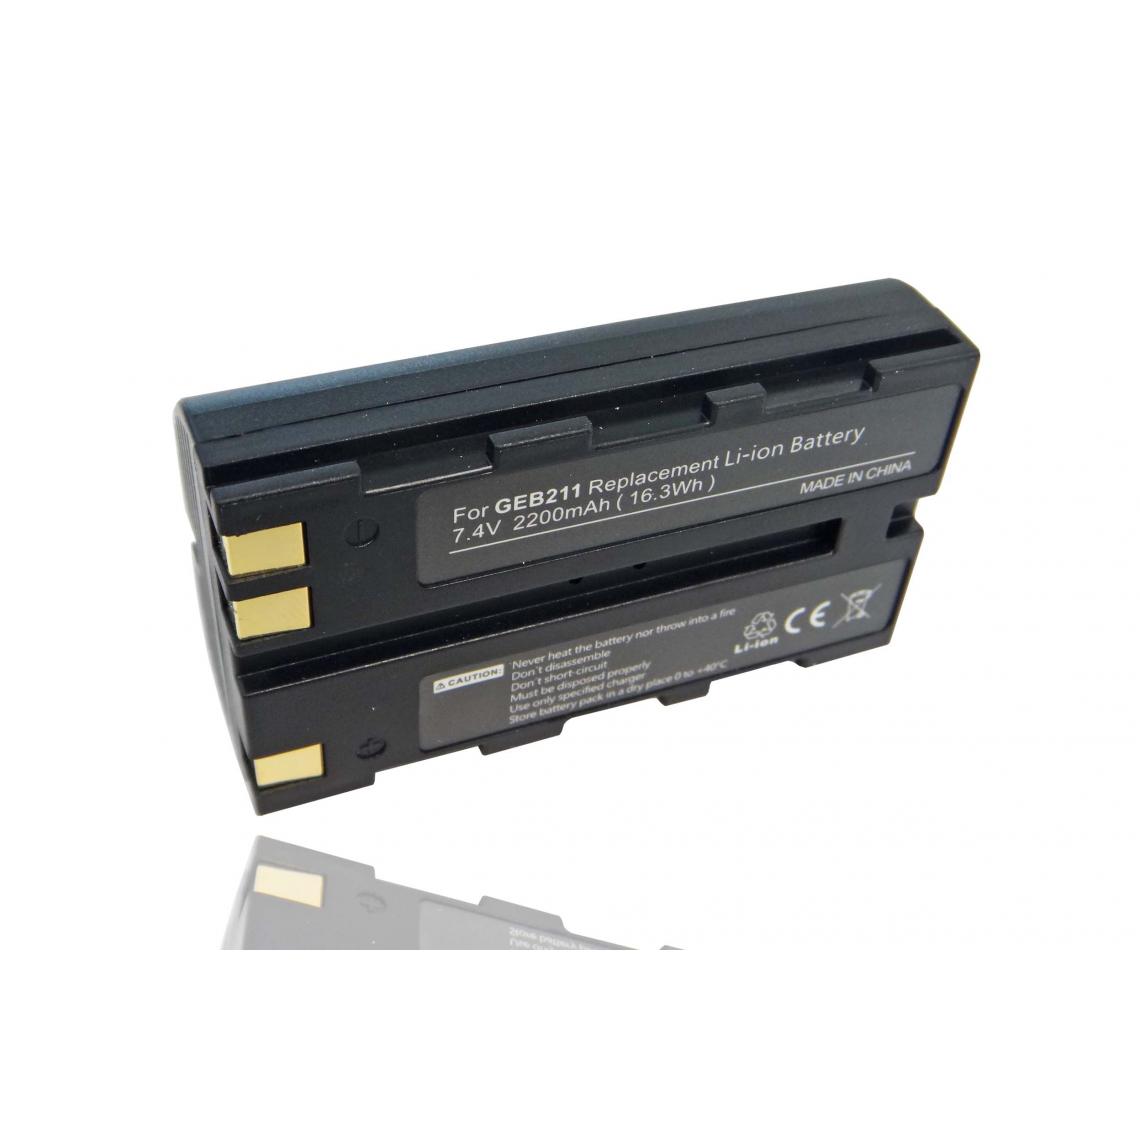 Vhbw - vhbw Batterie compatible avec Leica TCR402, TCR405, TCR406 dispositif de mesure laser, outil de mesure (2200mAh, 7,4V, Li-ion) - Piles rechargeables